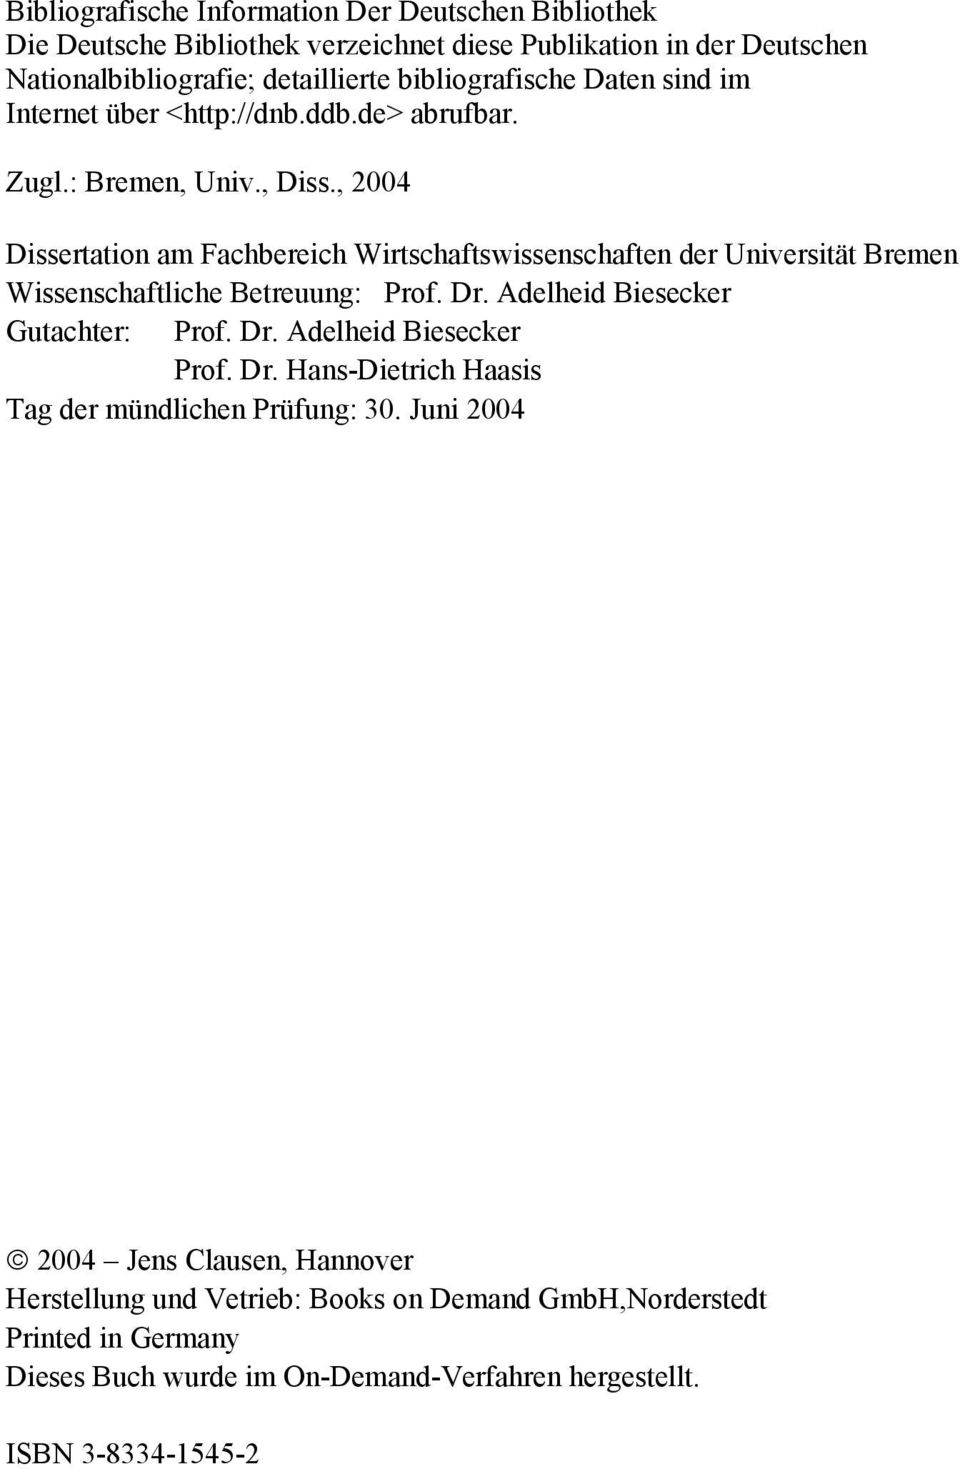 , 2004 Dissertation am Fachbereich Wirtschaftswissenschaften der Universität Bremen Wissenschaftliche Betreuung: Prof. Dr. Adelheid Biesecker Gutachter: Prof. Dr. Adelheid Biesecker Prof.